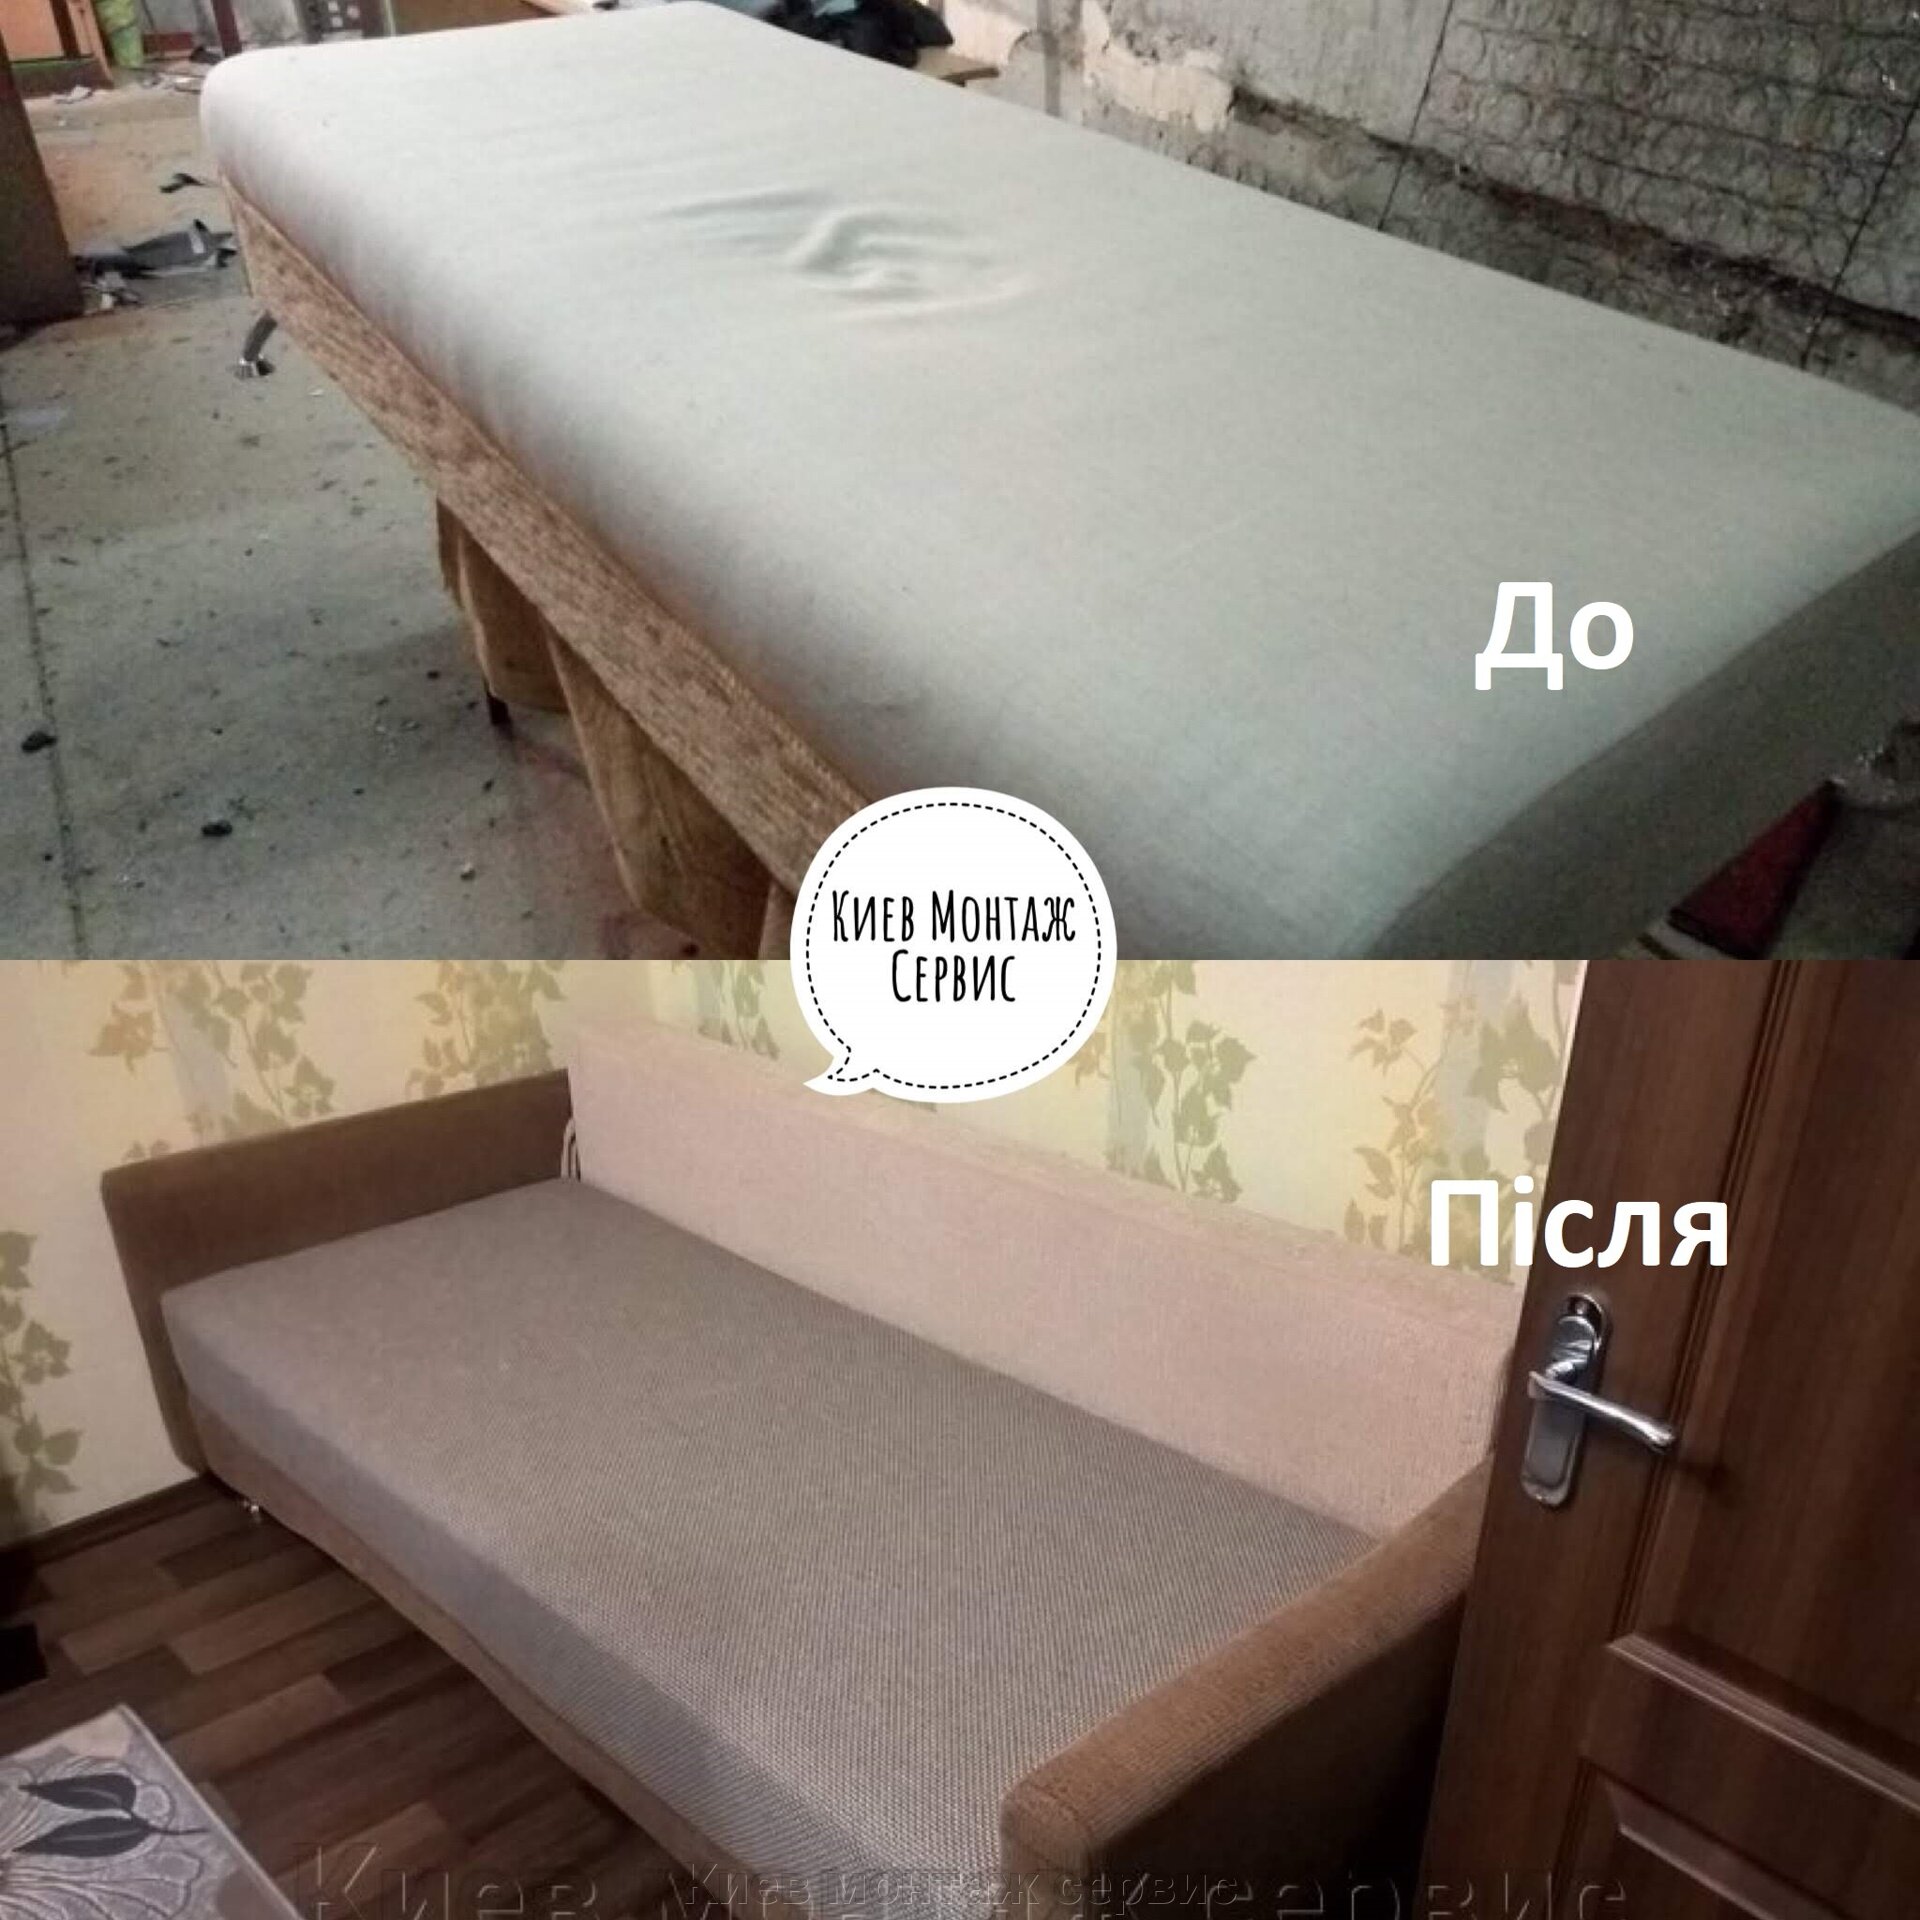 Ремонт и частичная перетяжка мебели Киев Троещина, Радужный. Обивка дивана